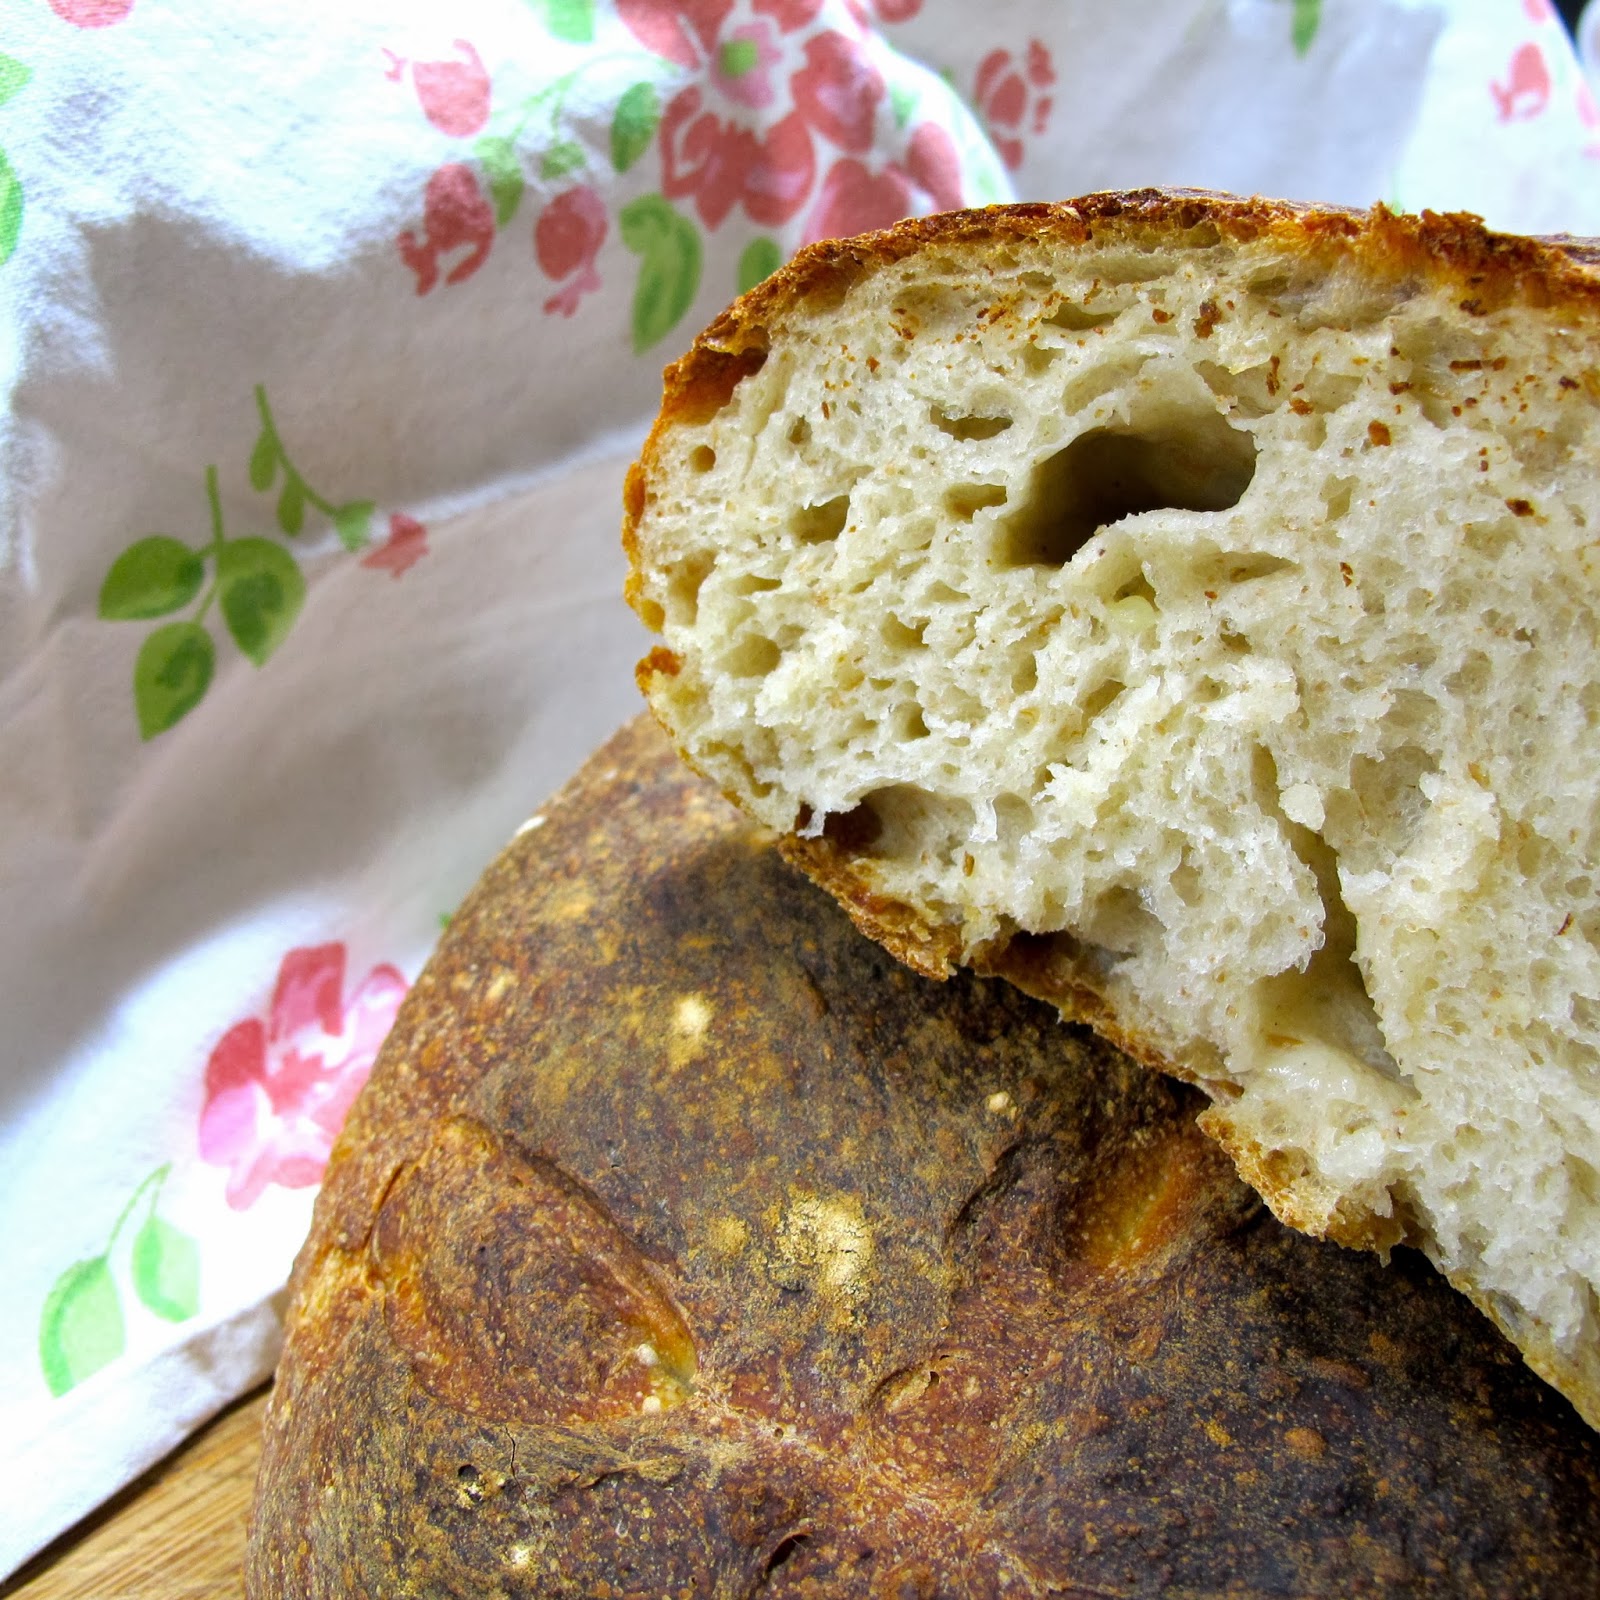 Burgonyàs kenyèr ou pão de batata húngaro